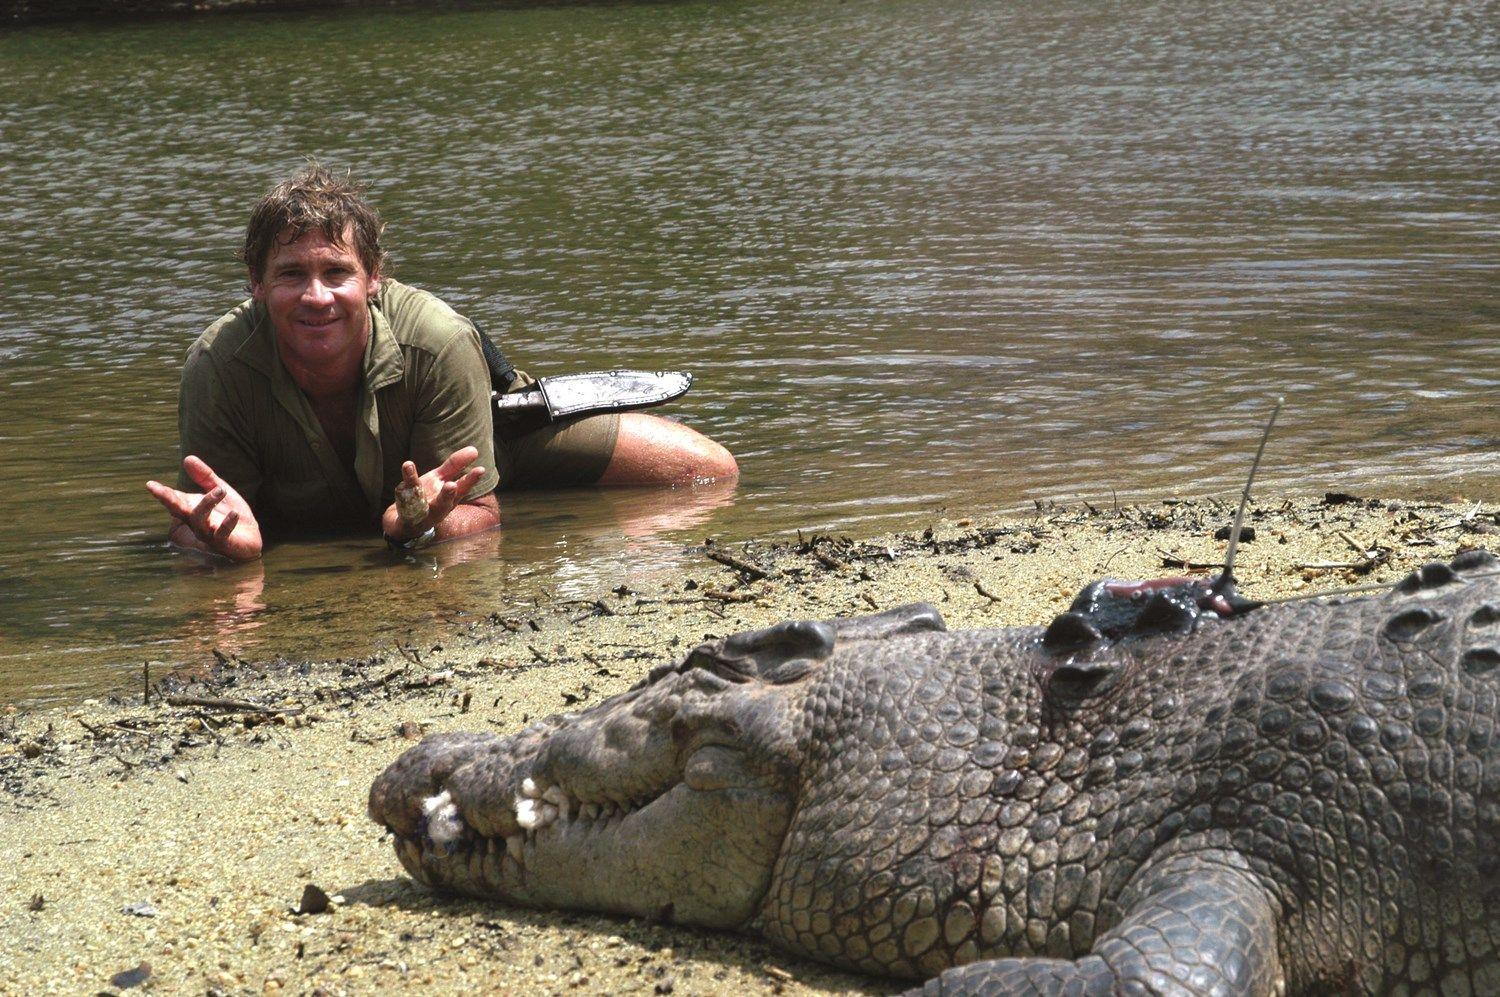 Steve Irwin Crocodile Hunter Logo - โรเบิร์ต เออร์วิน : นักอนุรักษ์กับภาพถ่ายที่ทำให้คุณอยากอนุรักษ์